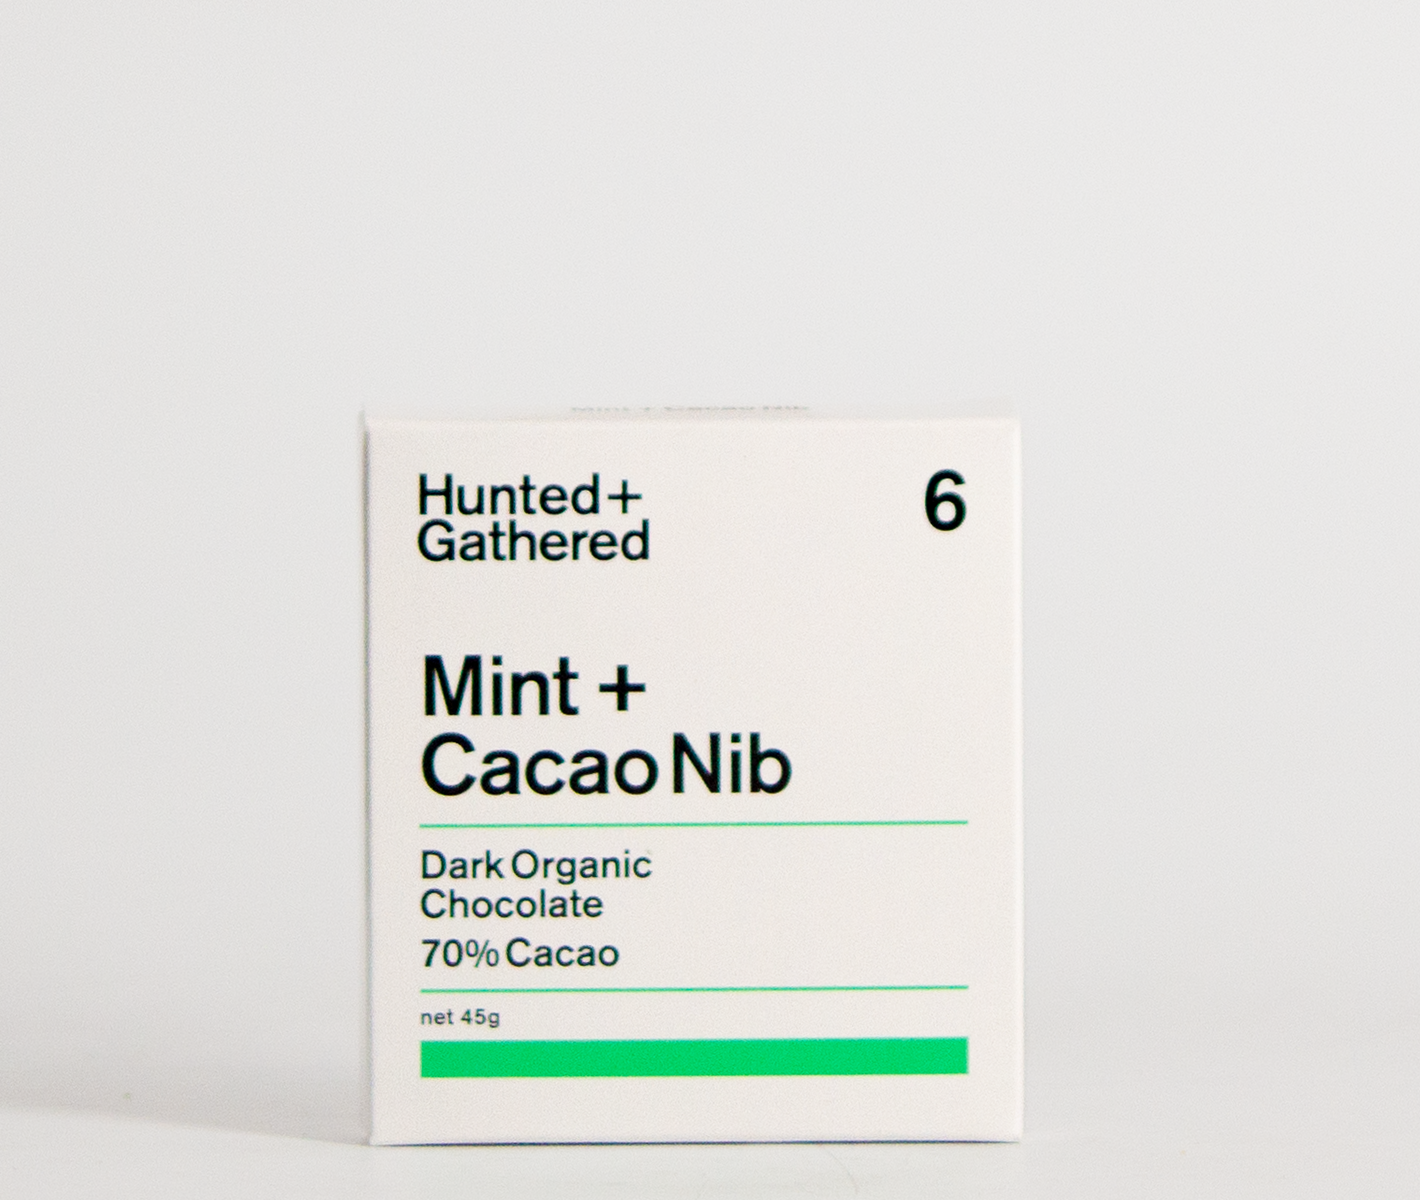 Mint + Cacao Nib (45g)